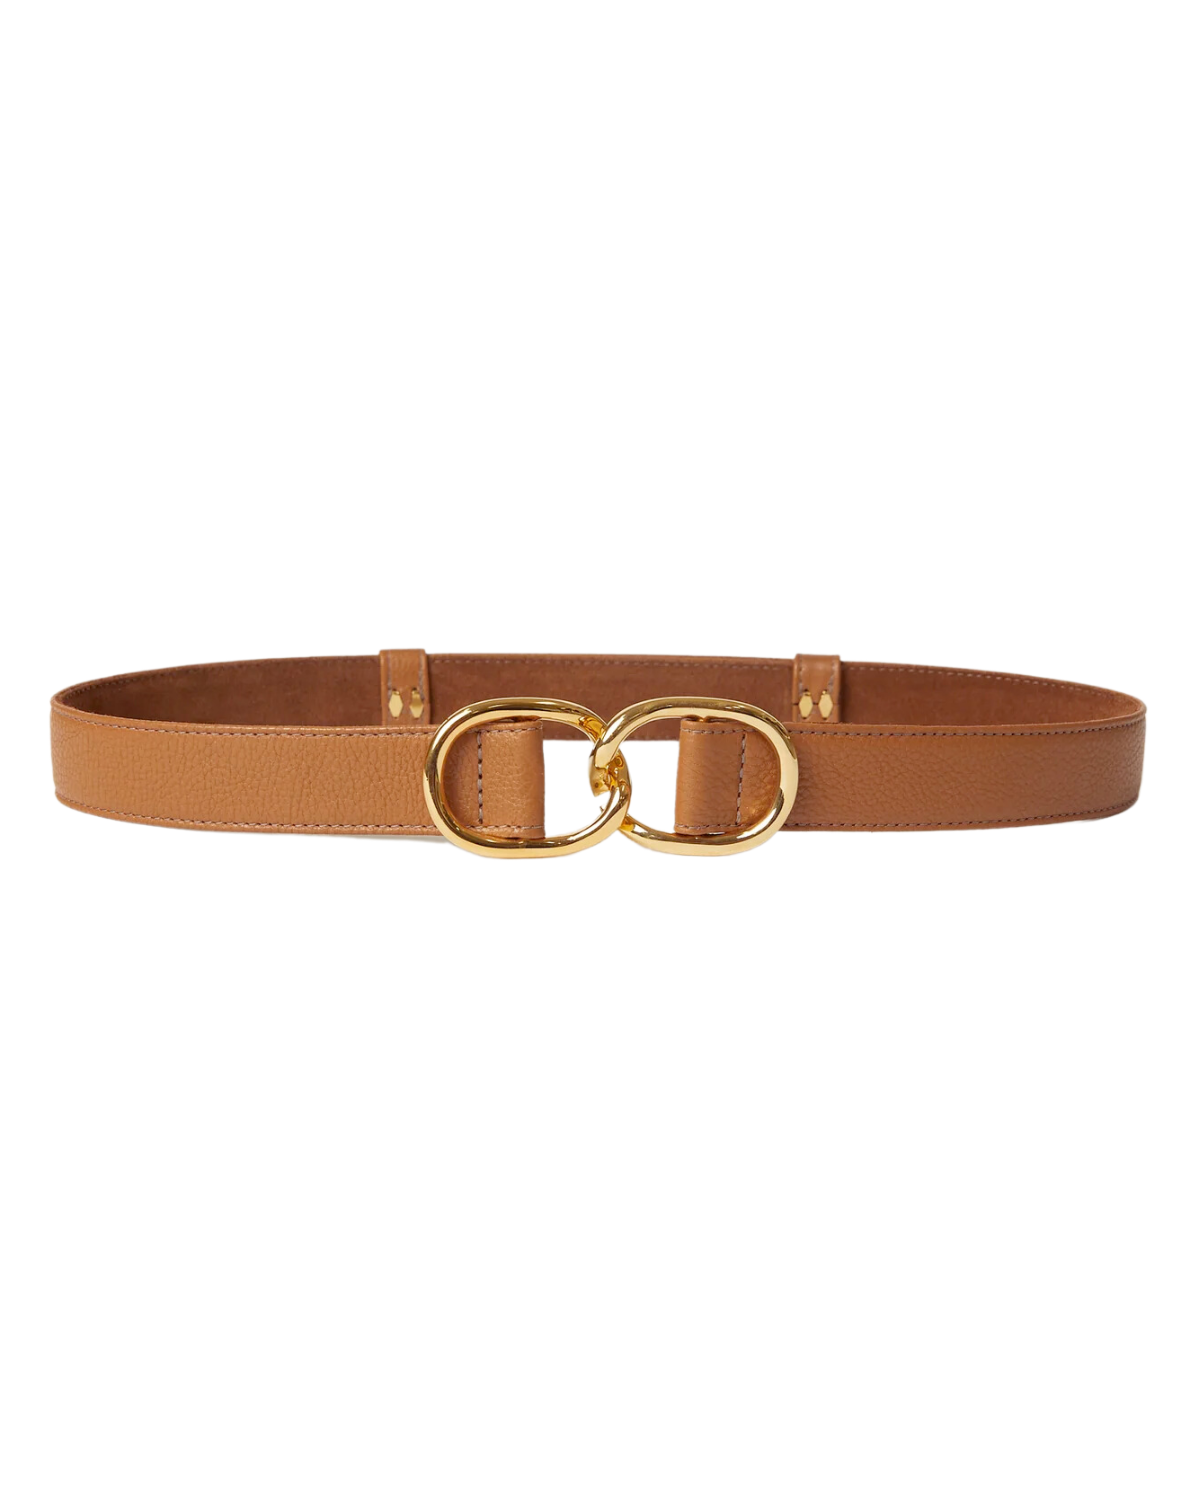 Maeve Mini Belt (Cuoio Gold)